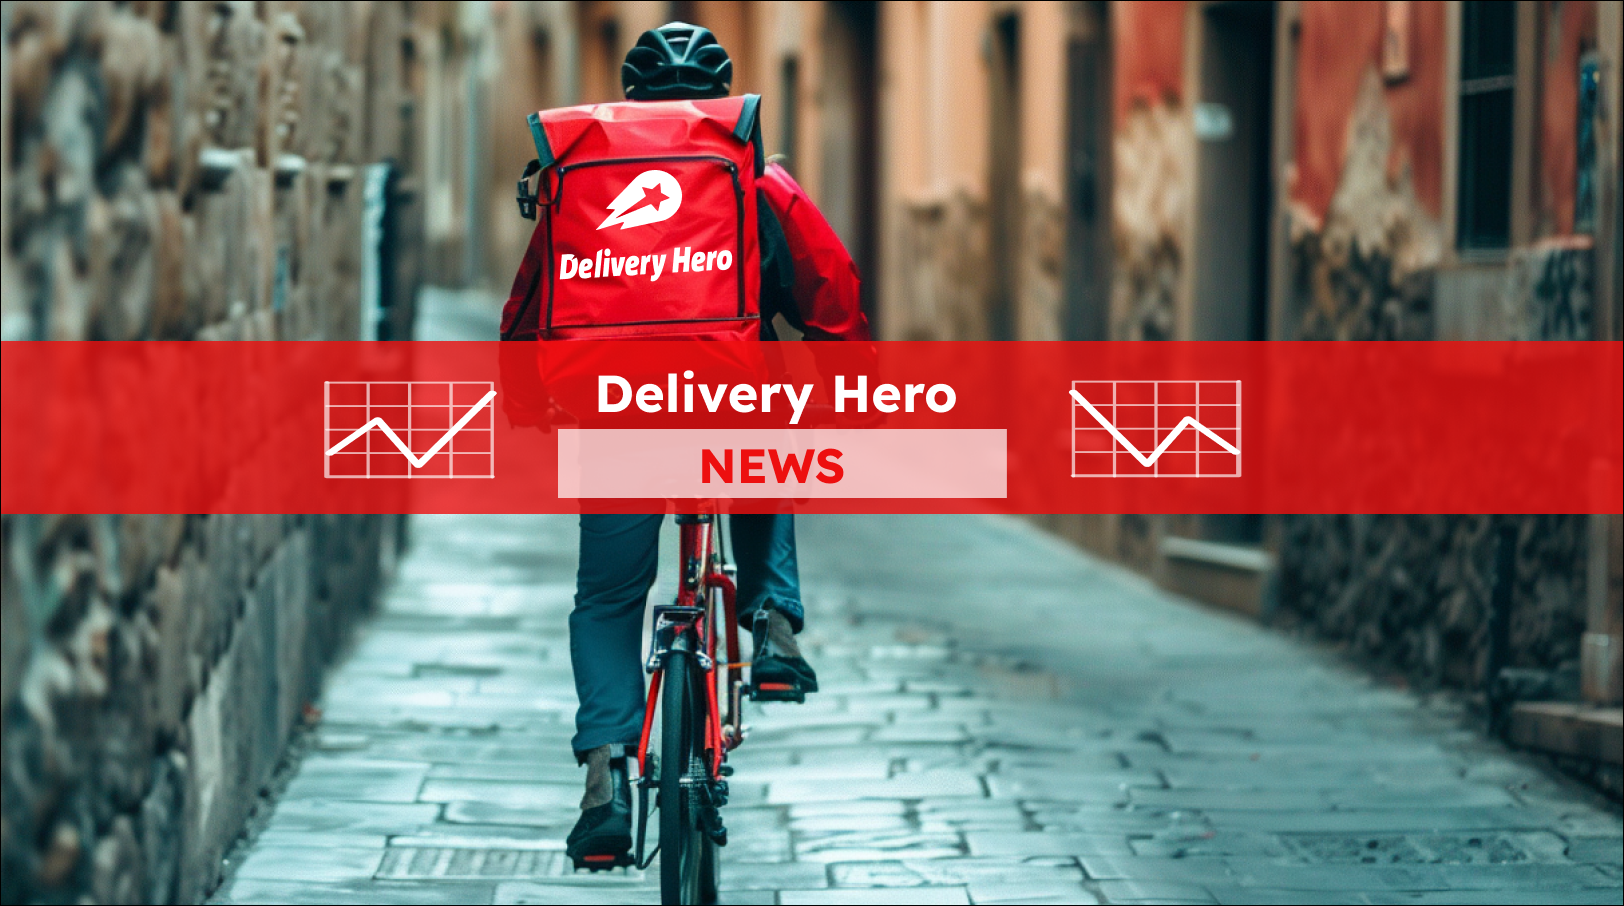 Ein Fahrradkurier mit einem roten Delivery Hero Rucksack, mit einem Delivery Hero NEWS Banner